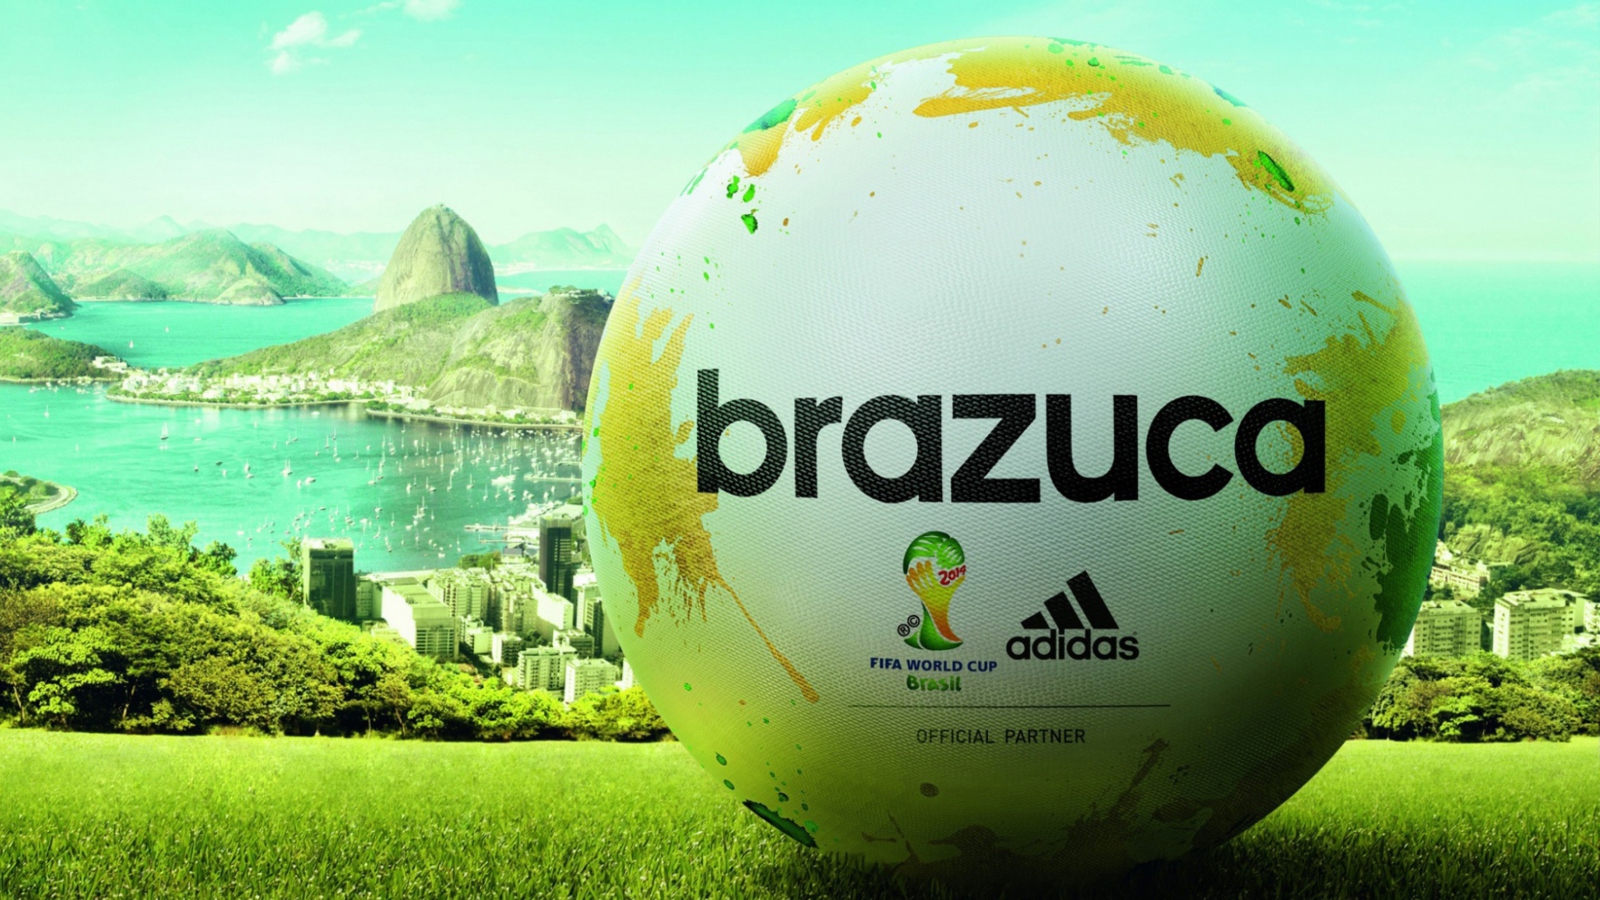 Das Adidas Brazuca Match Ball FIFA World Cup 2014 Wallpaper 1600x900